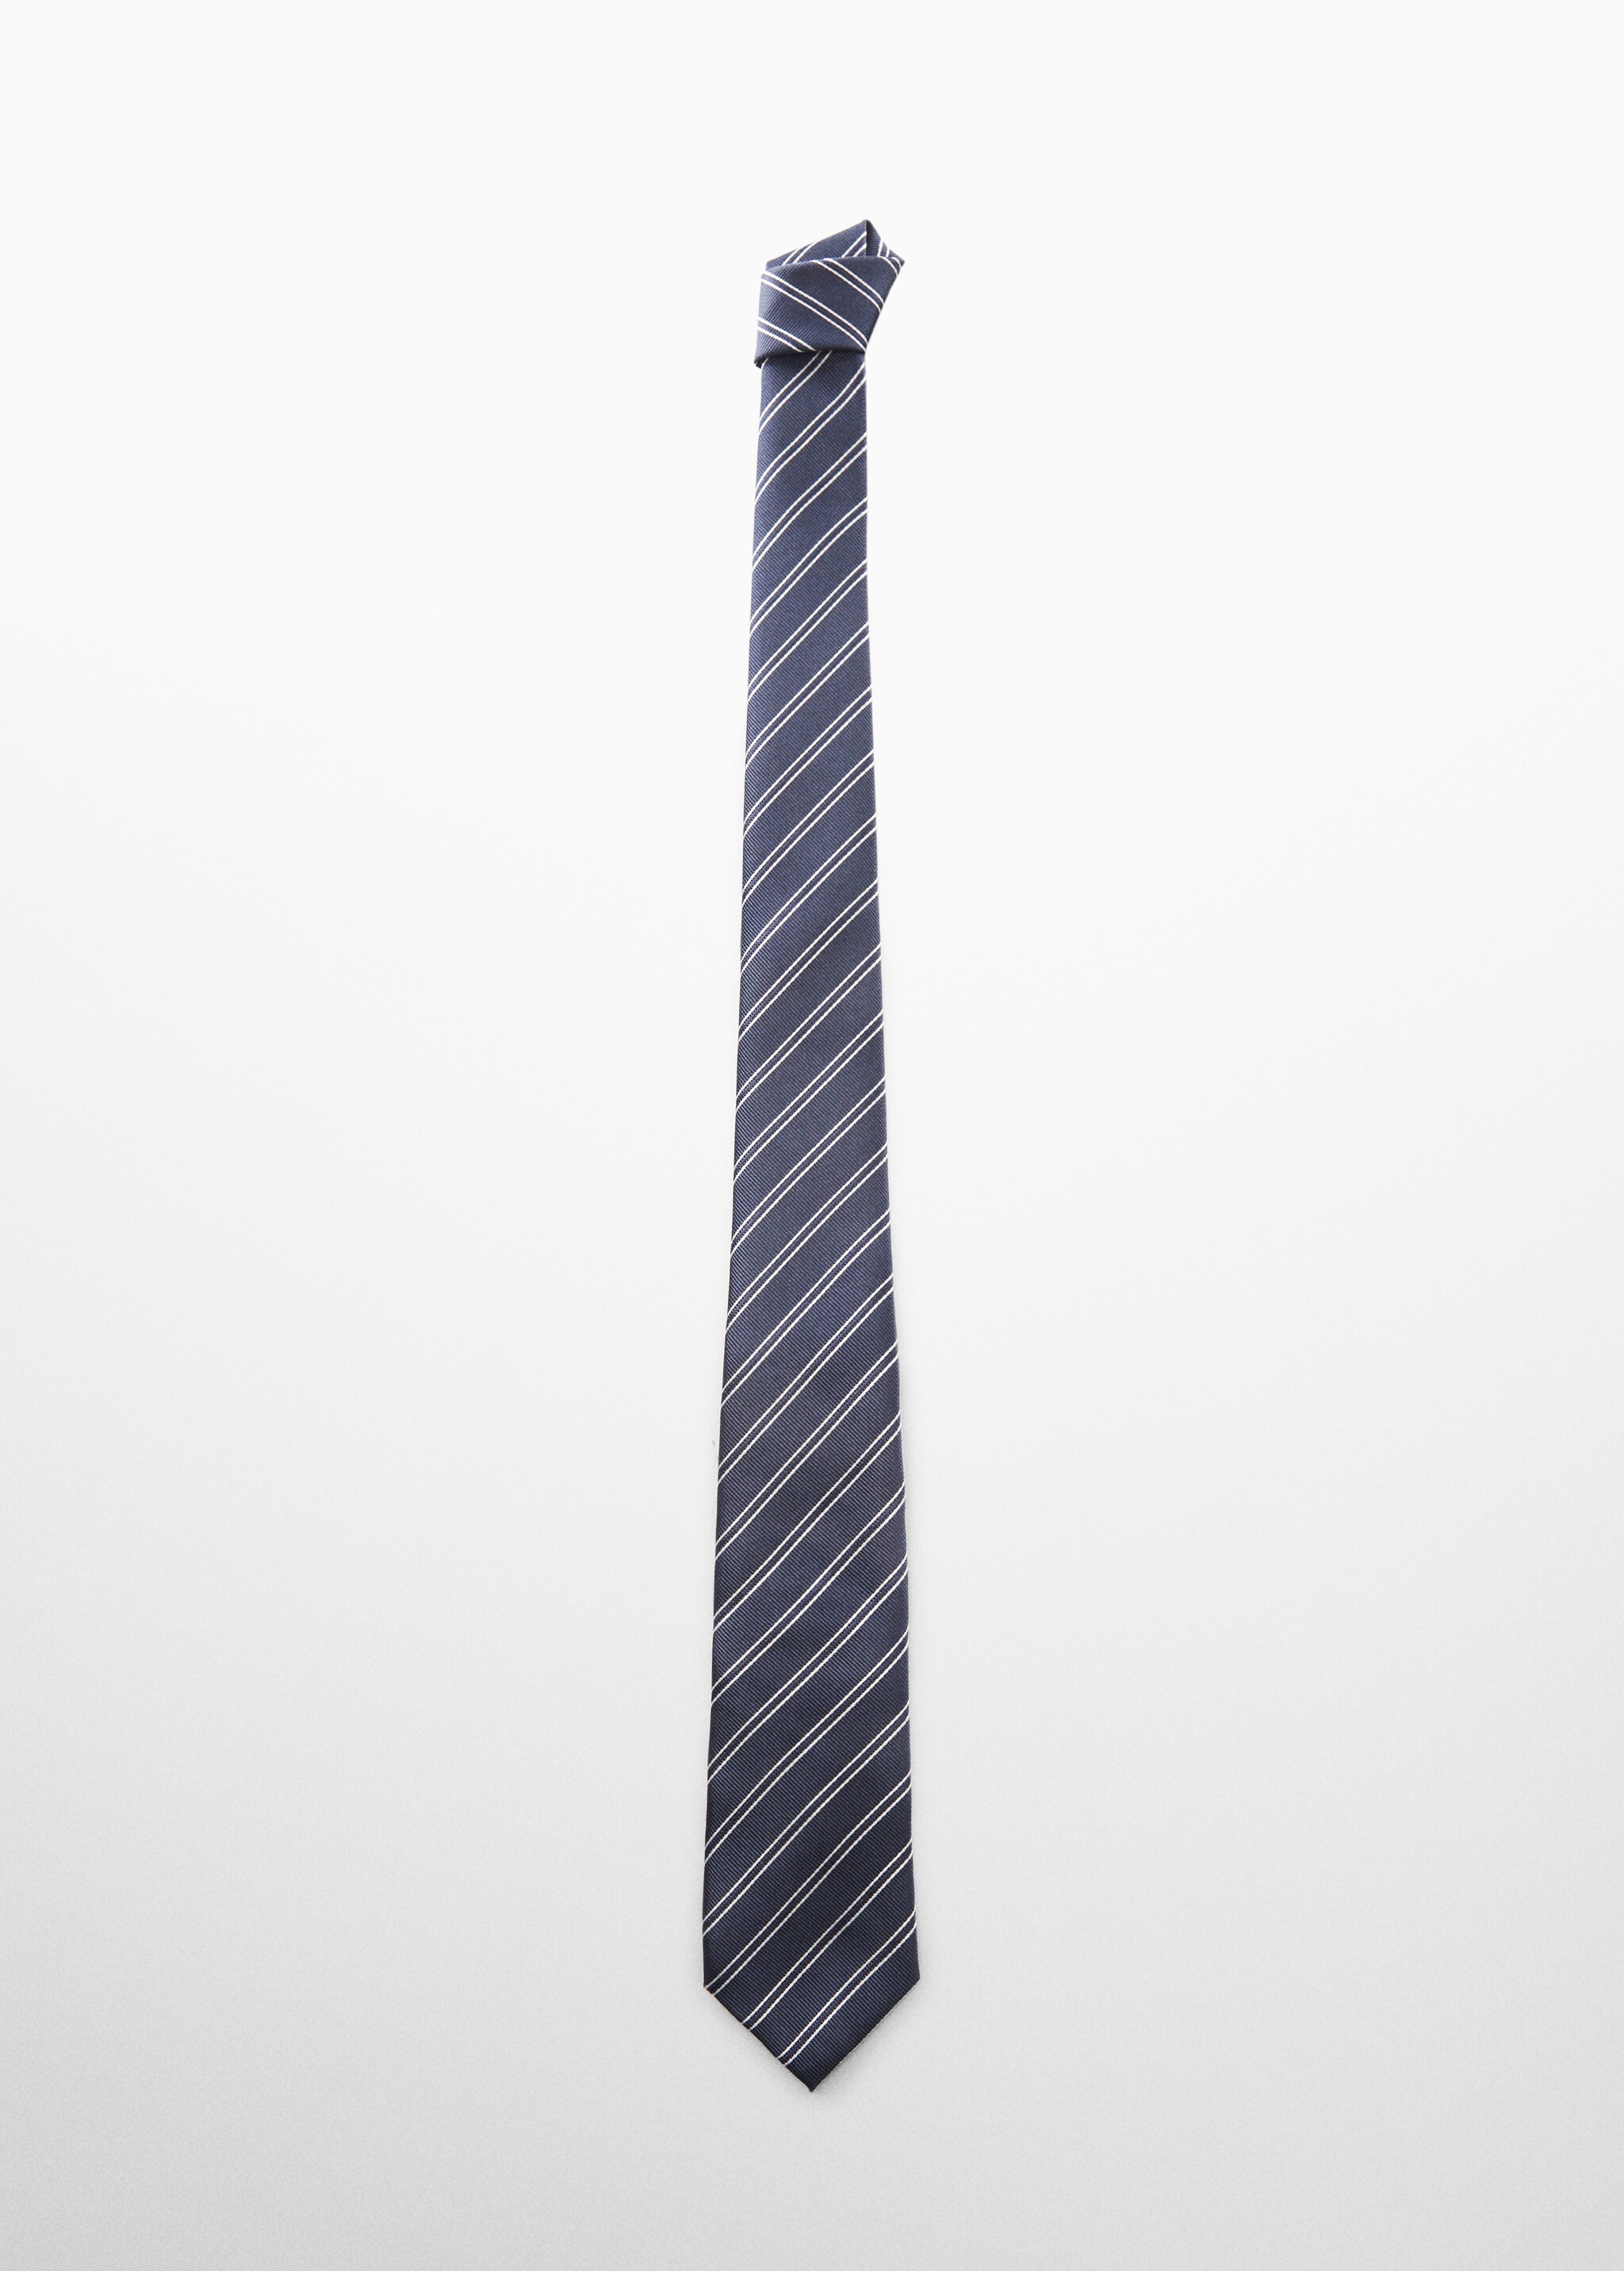 Cravate rayures antitache - Article sans modèle